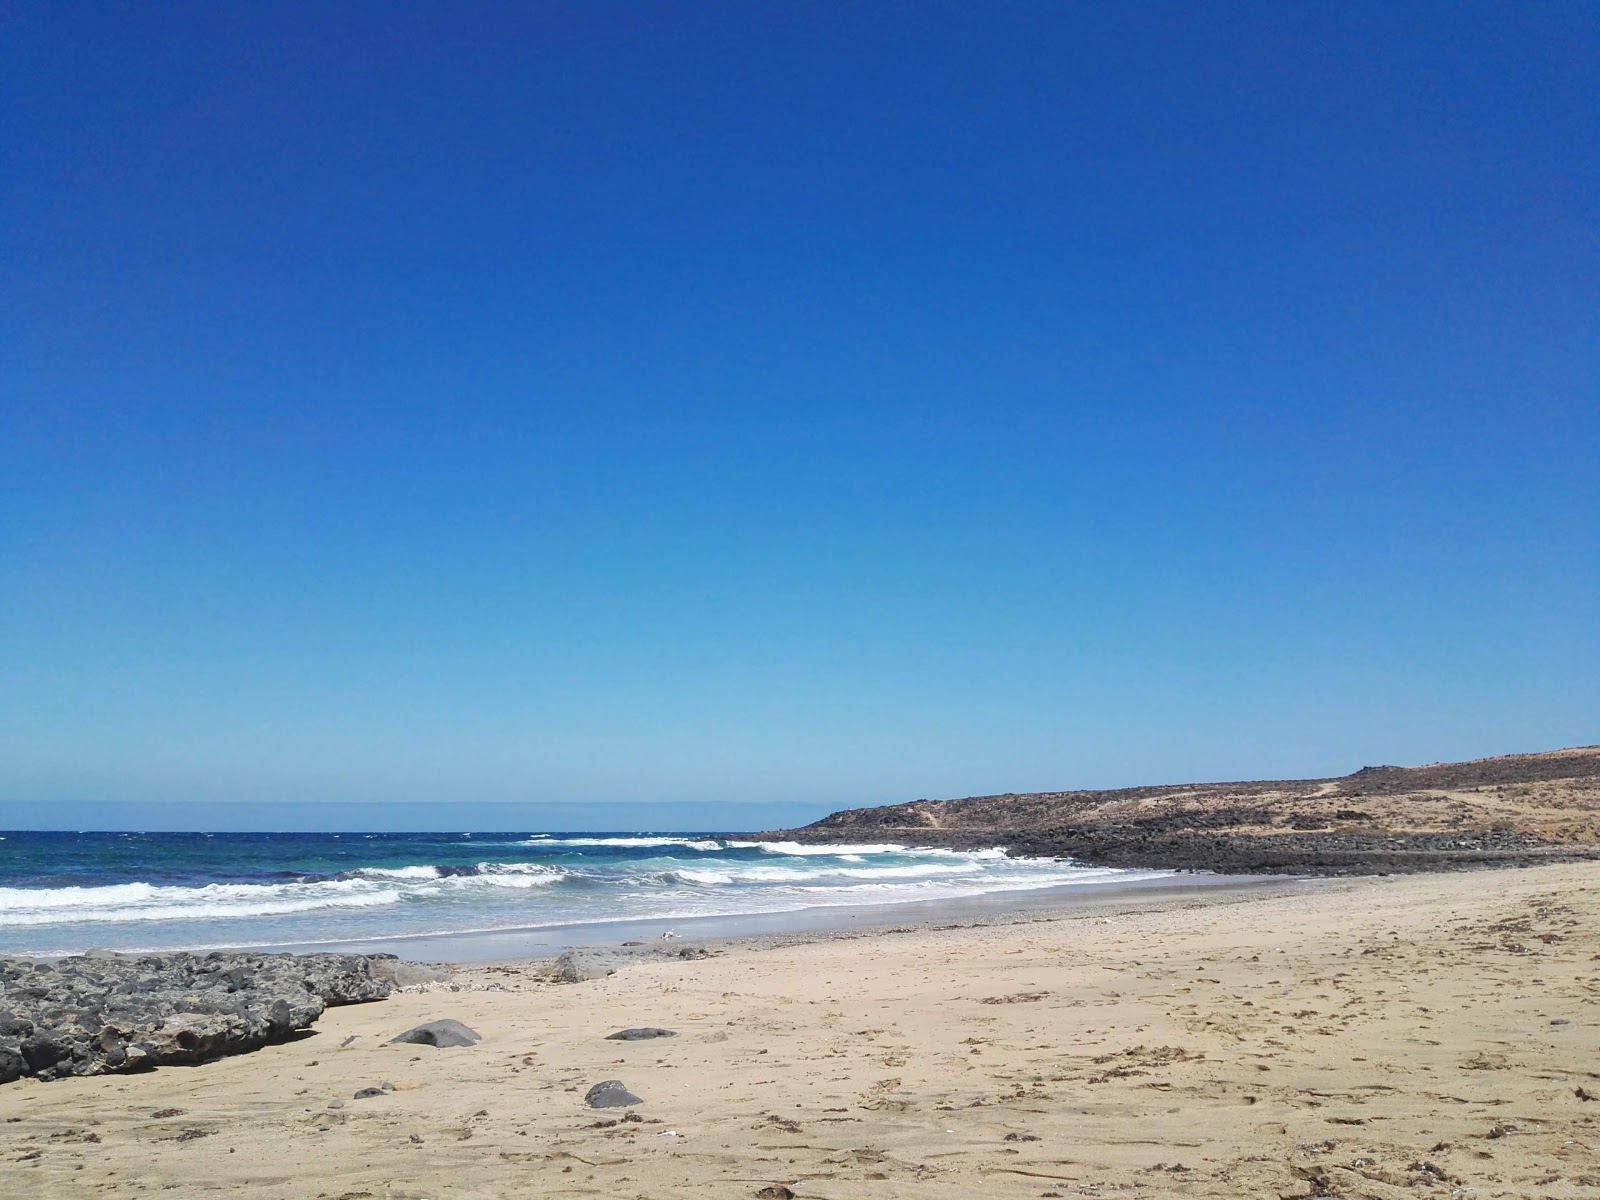 Playa Las Caletillas'in fotoğrafı parlak kum yüzey ile